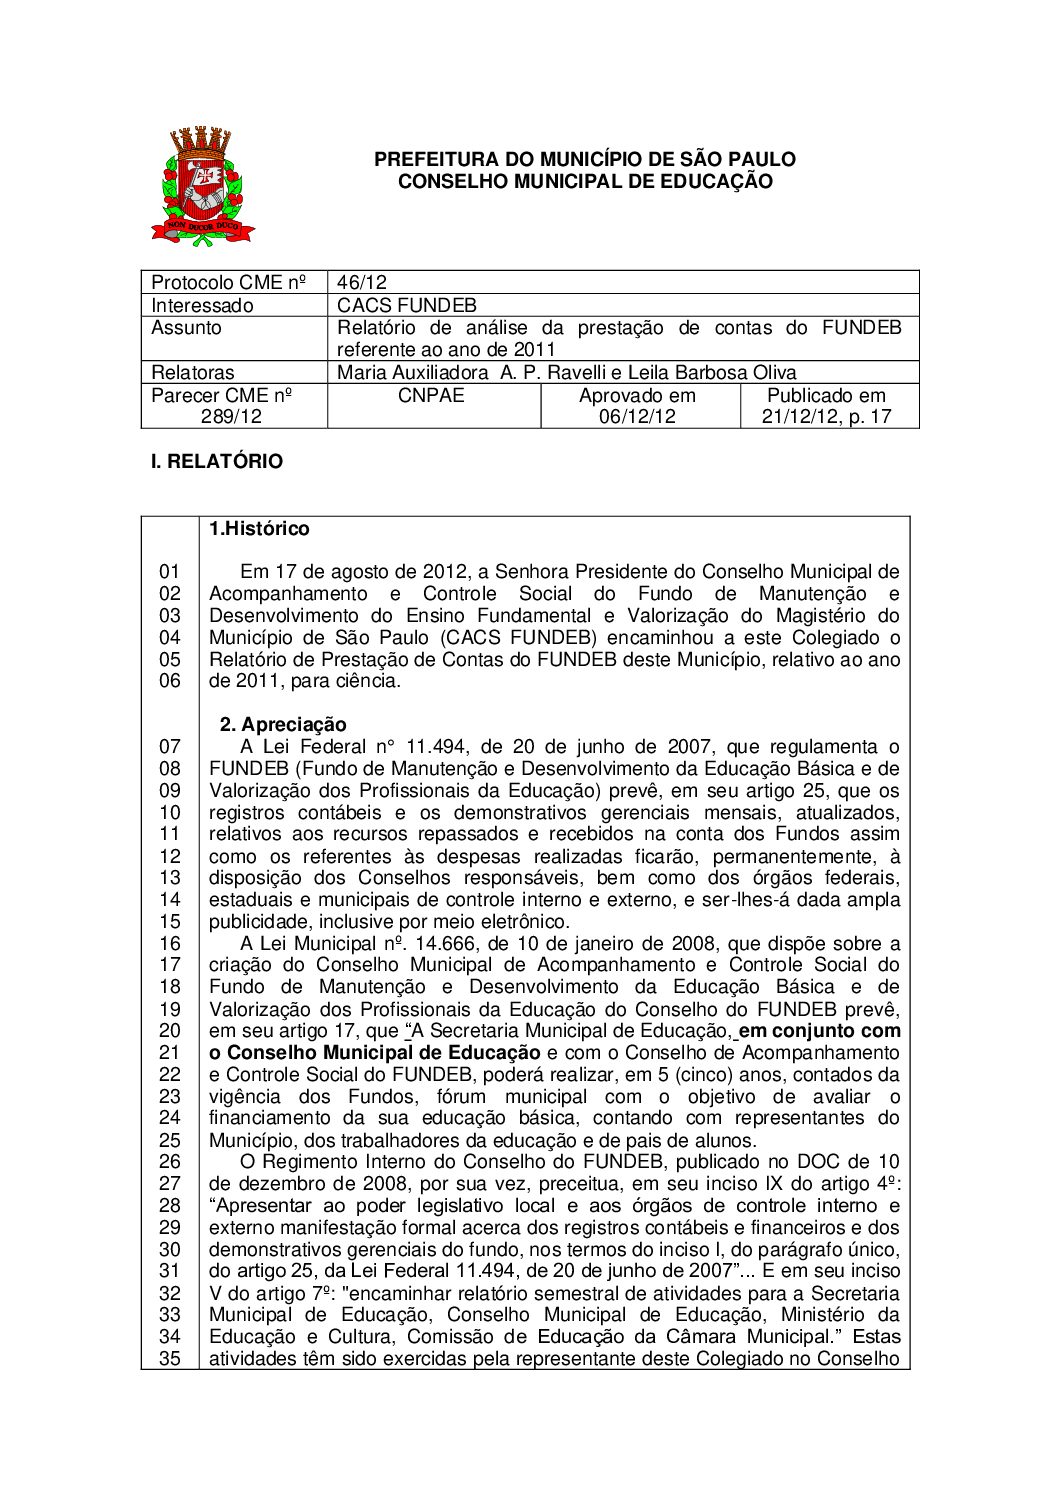 Parecer CME nº 289/2012 - Relatório de análise da prestação de contas do FUNDEB referente ao ano de 2011 